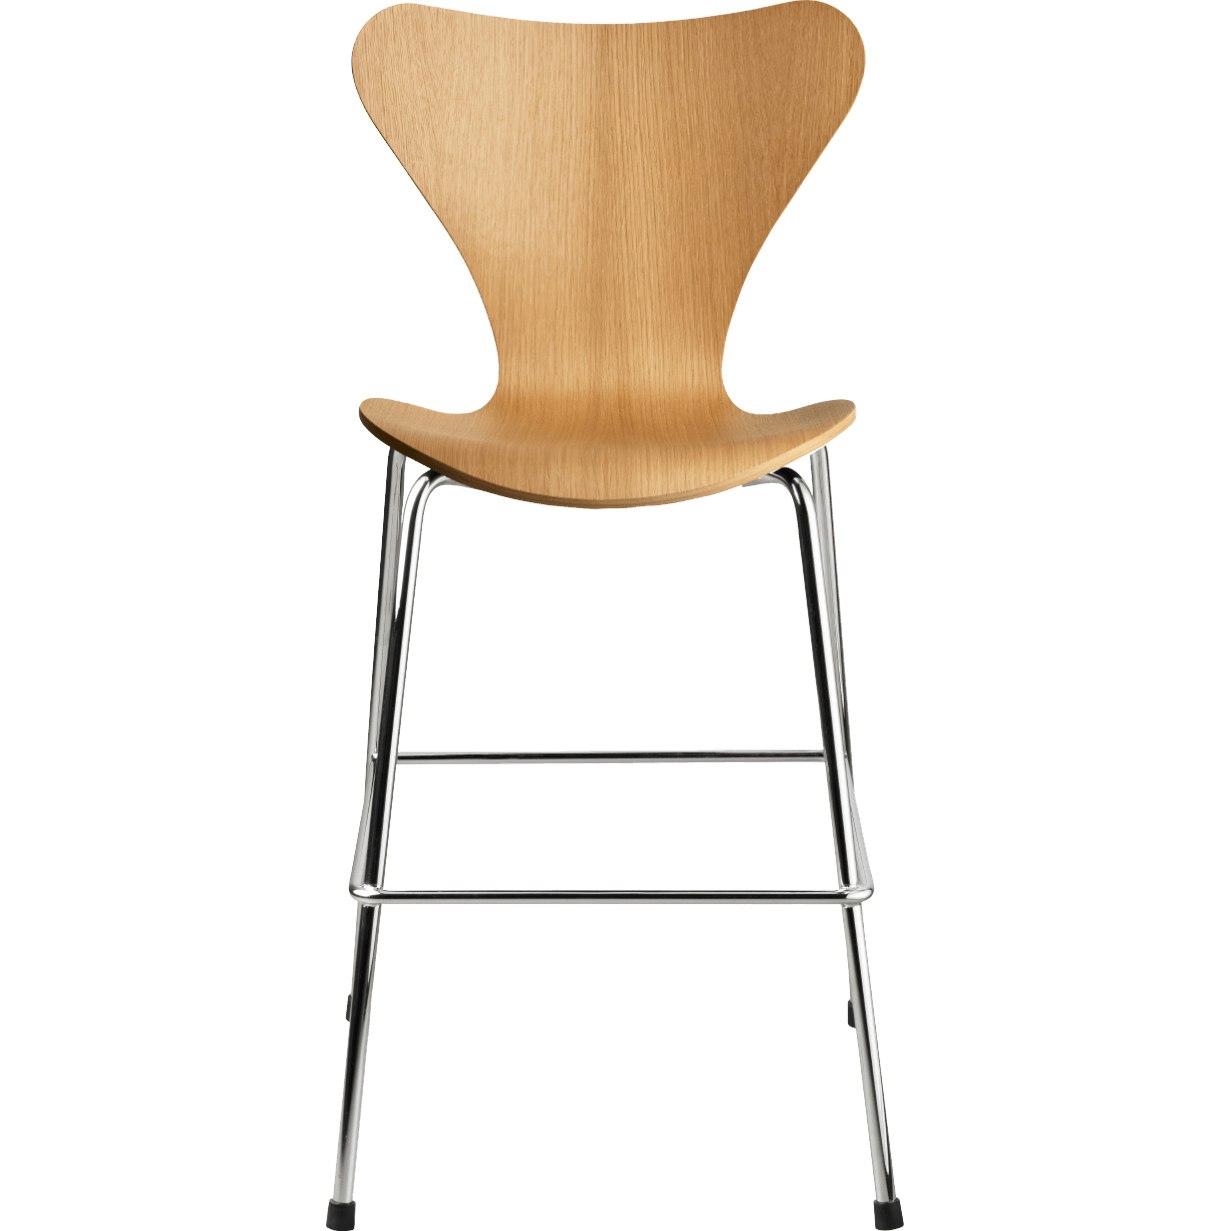 Series 7 Junior Chair, Oak / Chrome